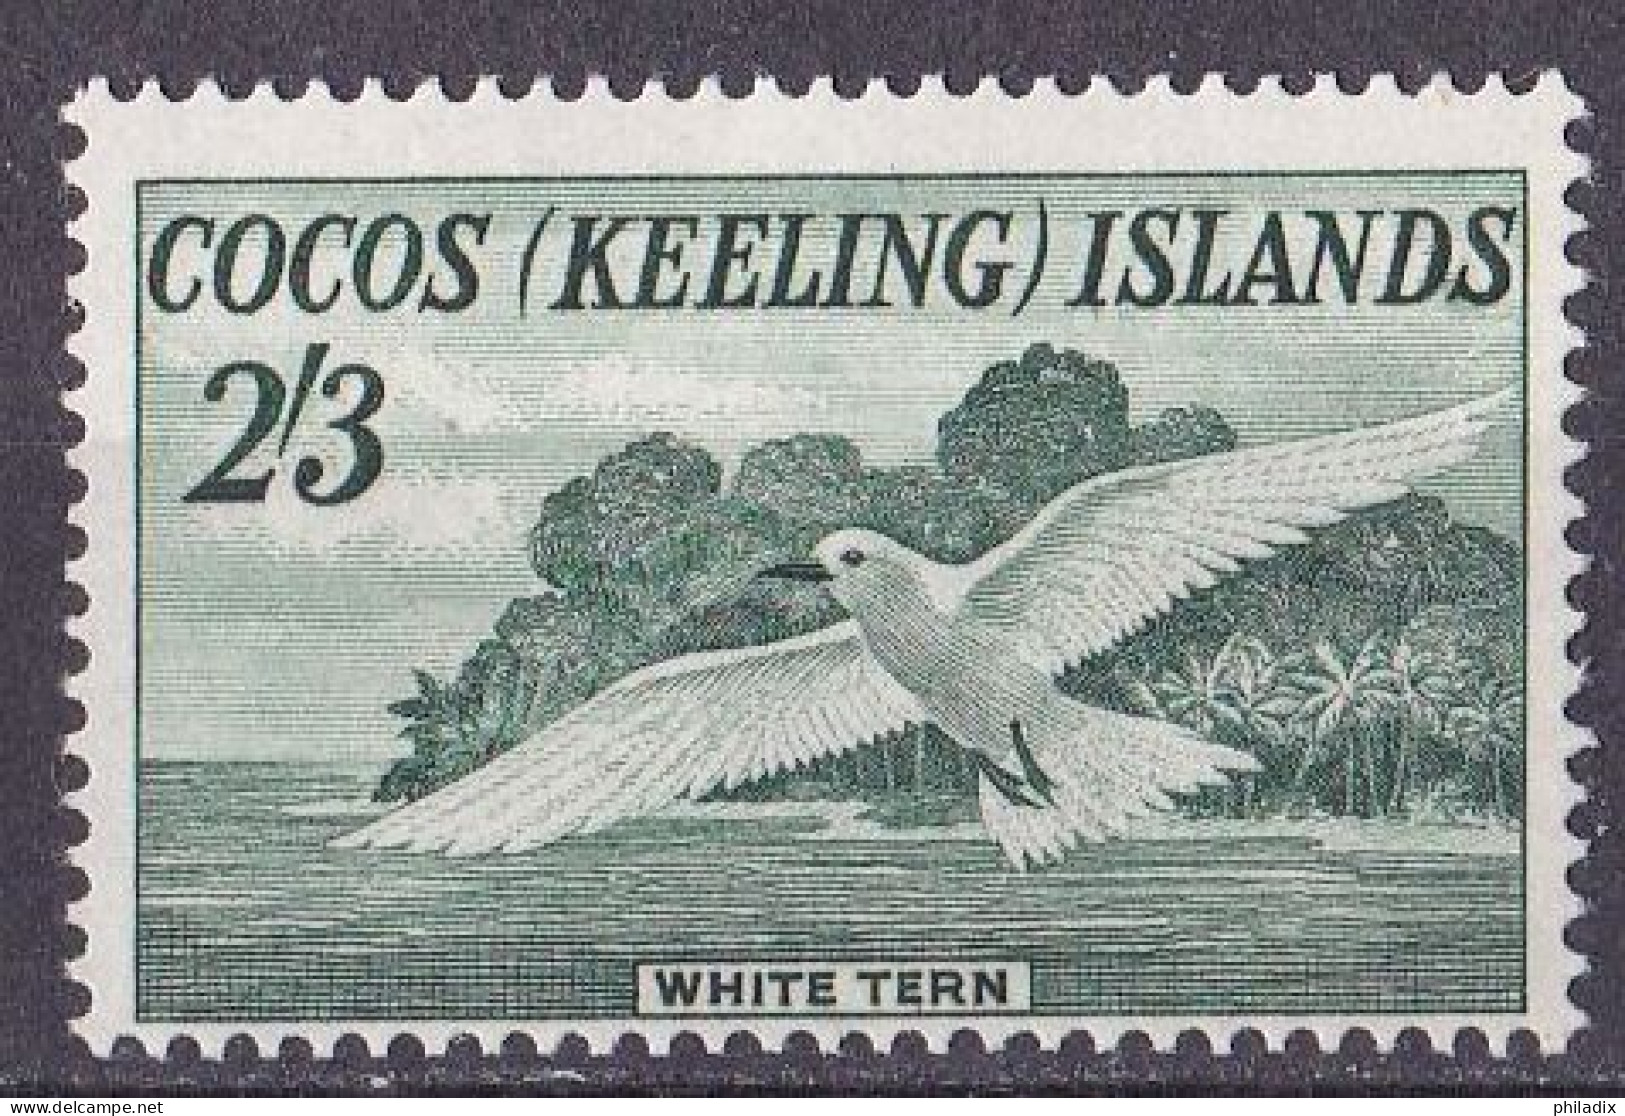 Kokosinseln (Keeling Island) Marke Von 1963 **/MNH (A5-9) - Kokosinseln (Keeling Islands)